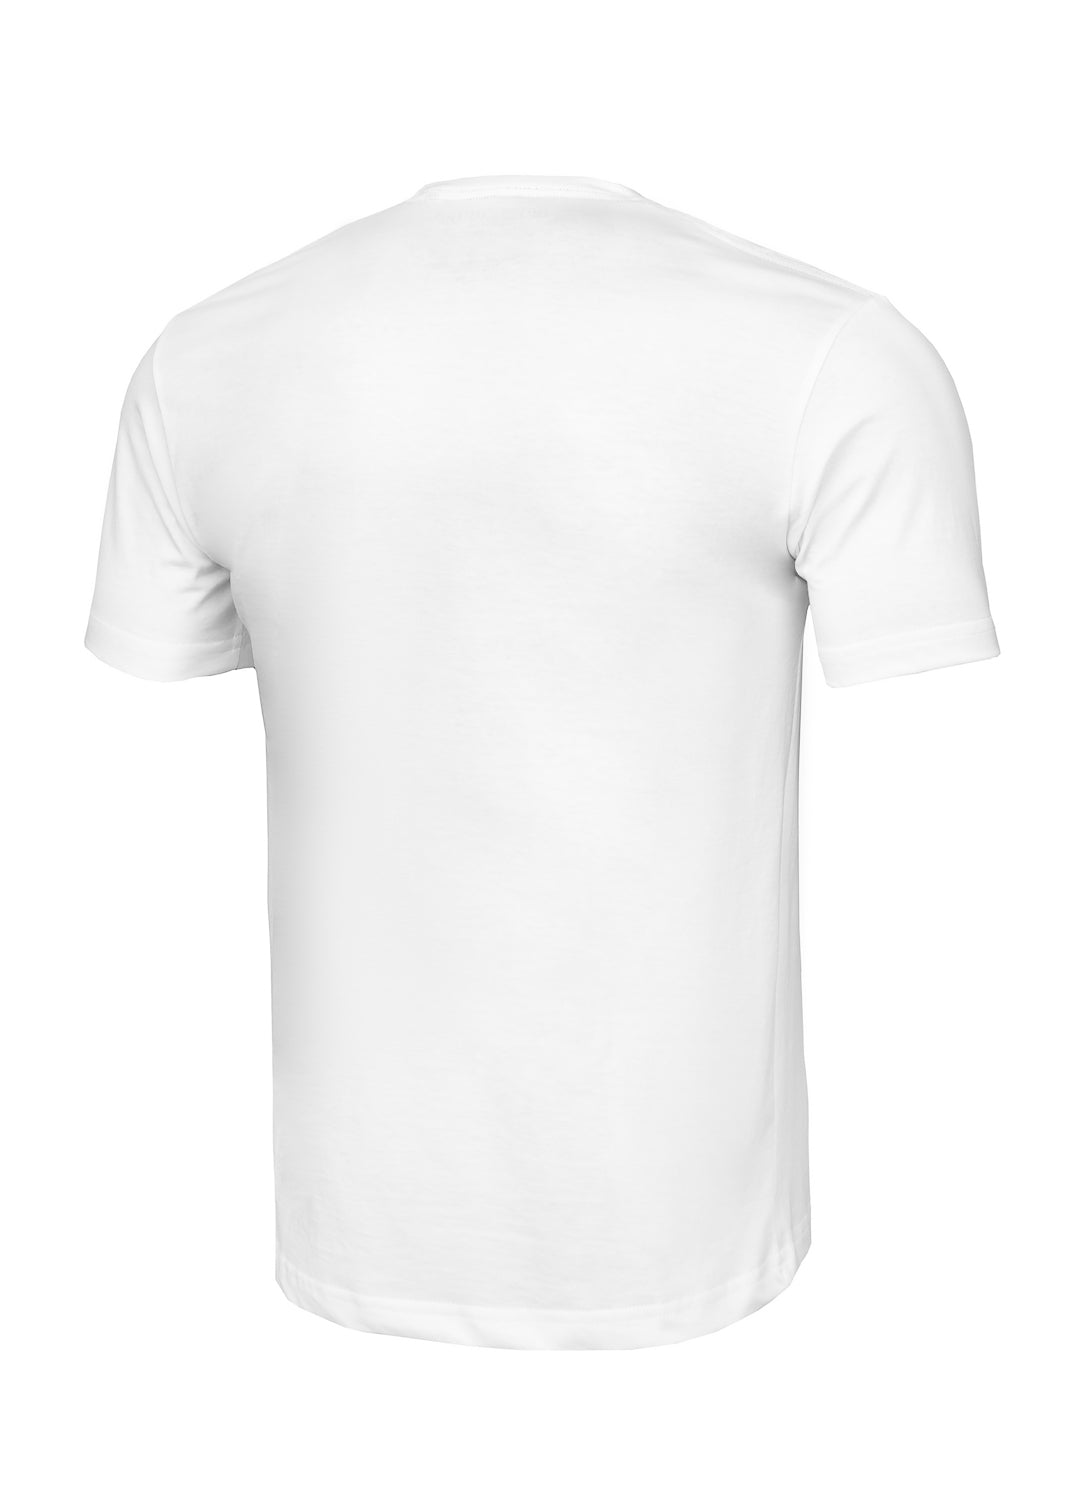 PITBULL USA T-shirt White.